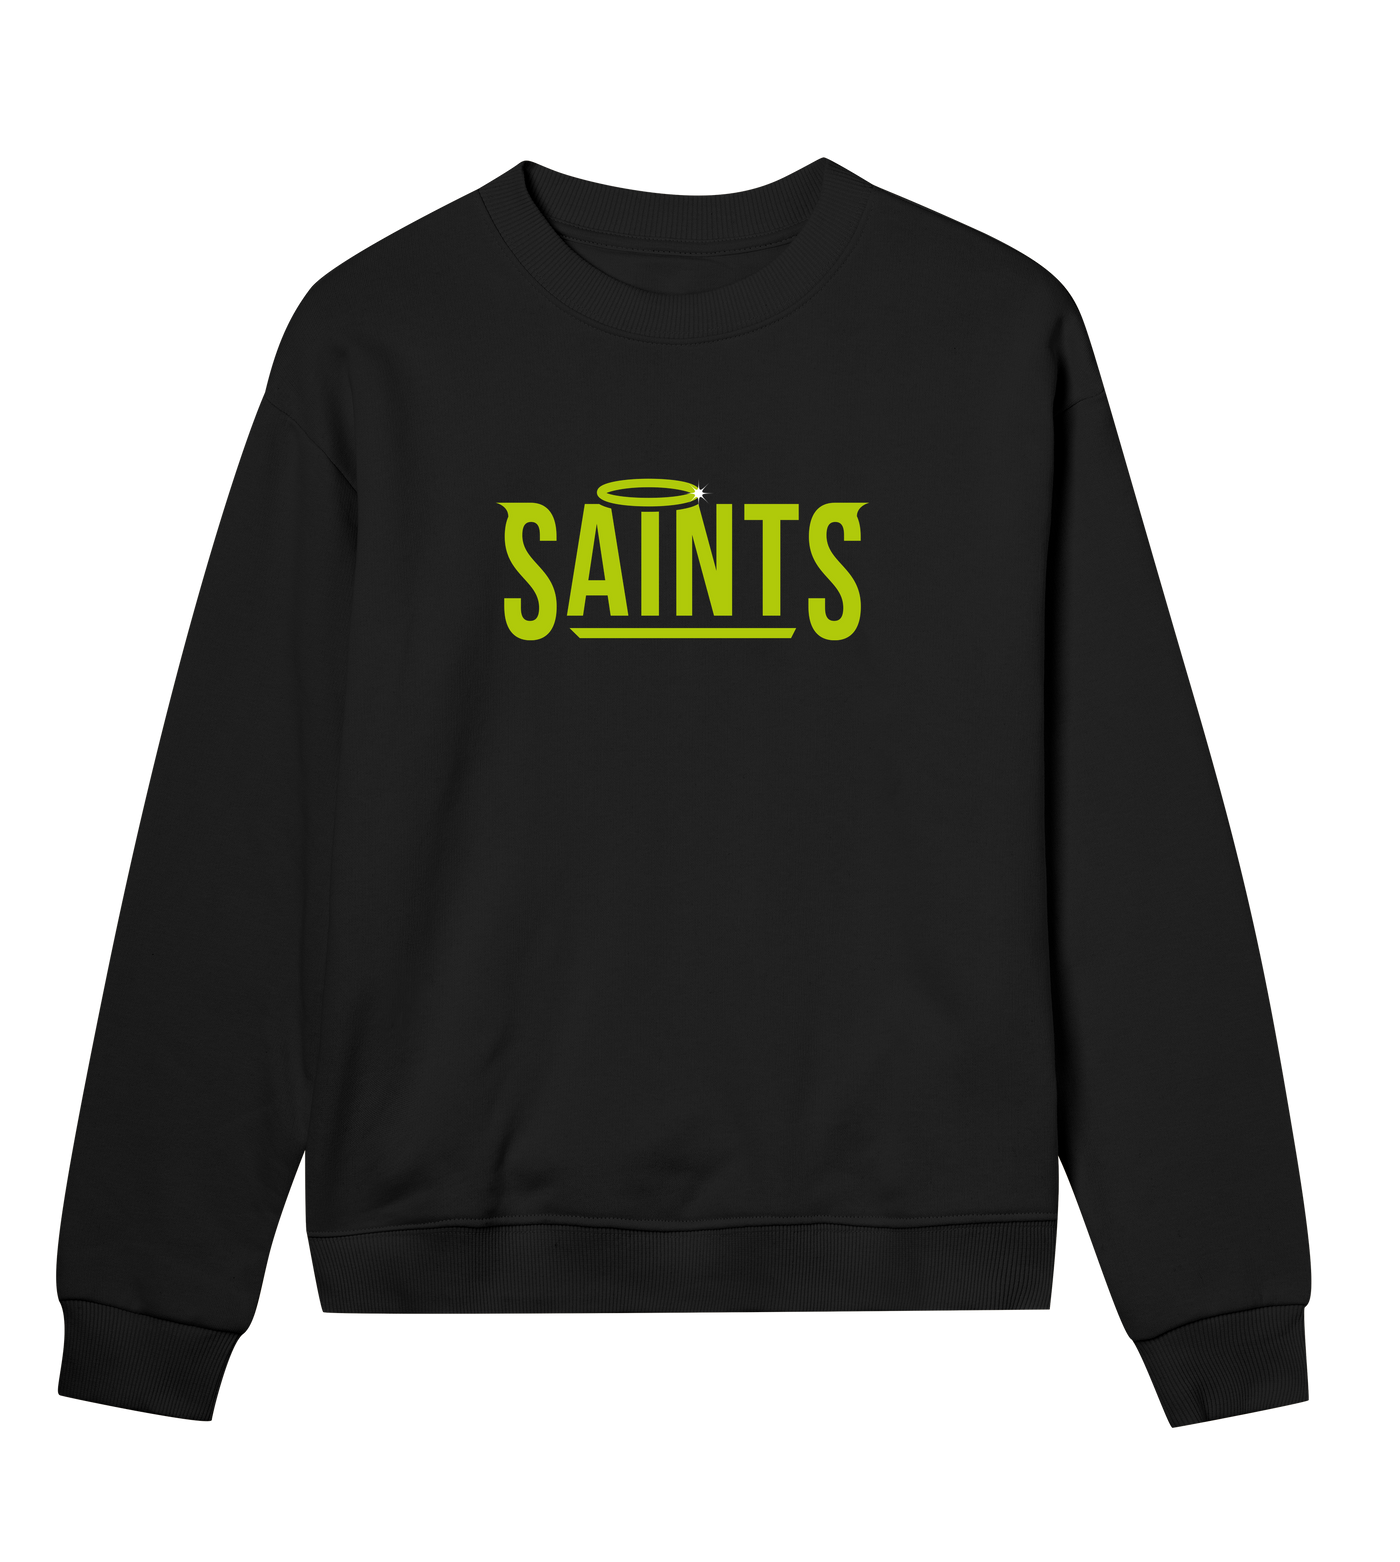 Nässjö Saints Women's Sweatshirt - Premium sweatshirt from REYRR STUDIO - Shop now at Reyrr Athletics